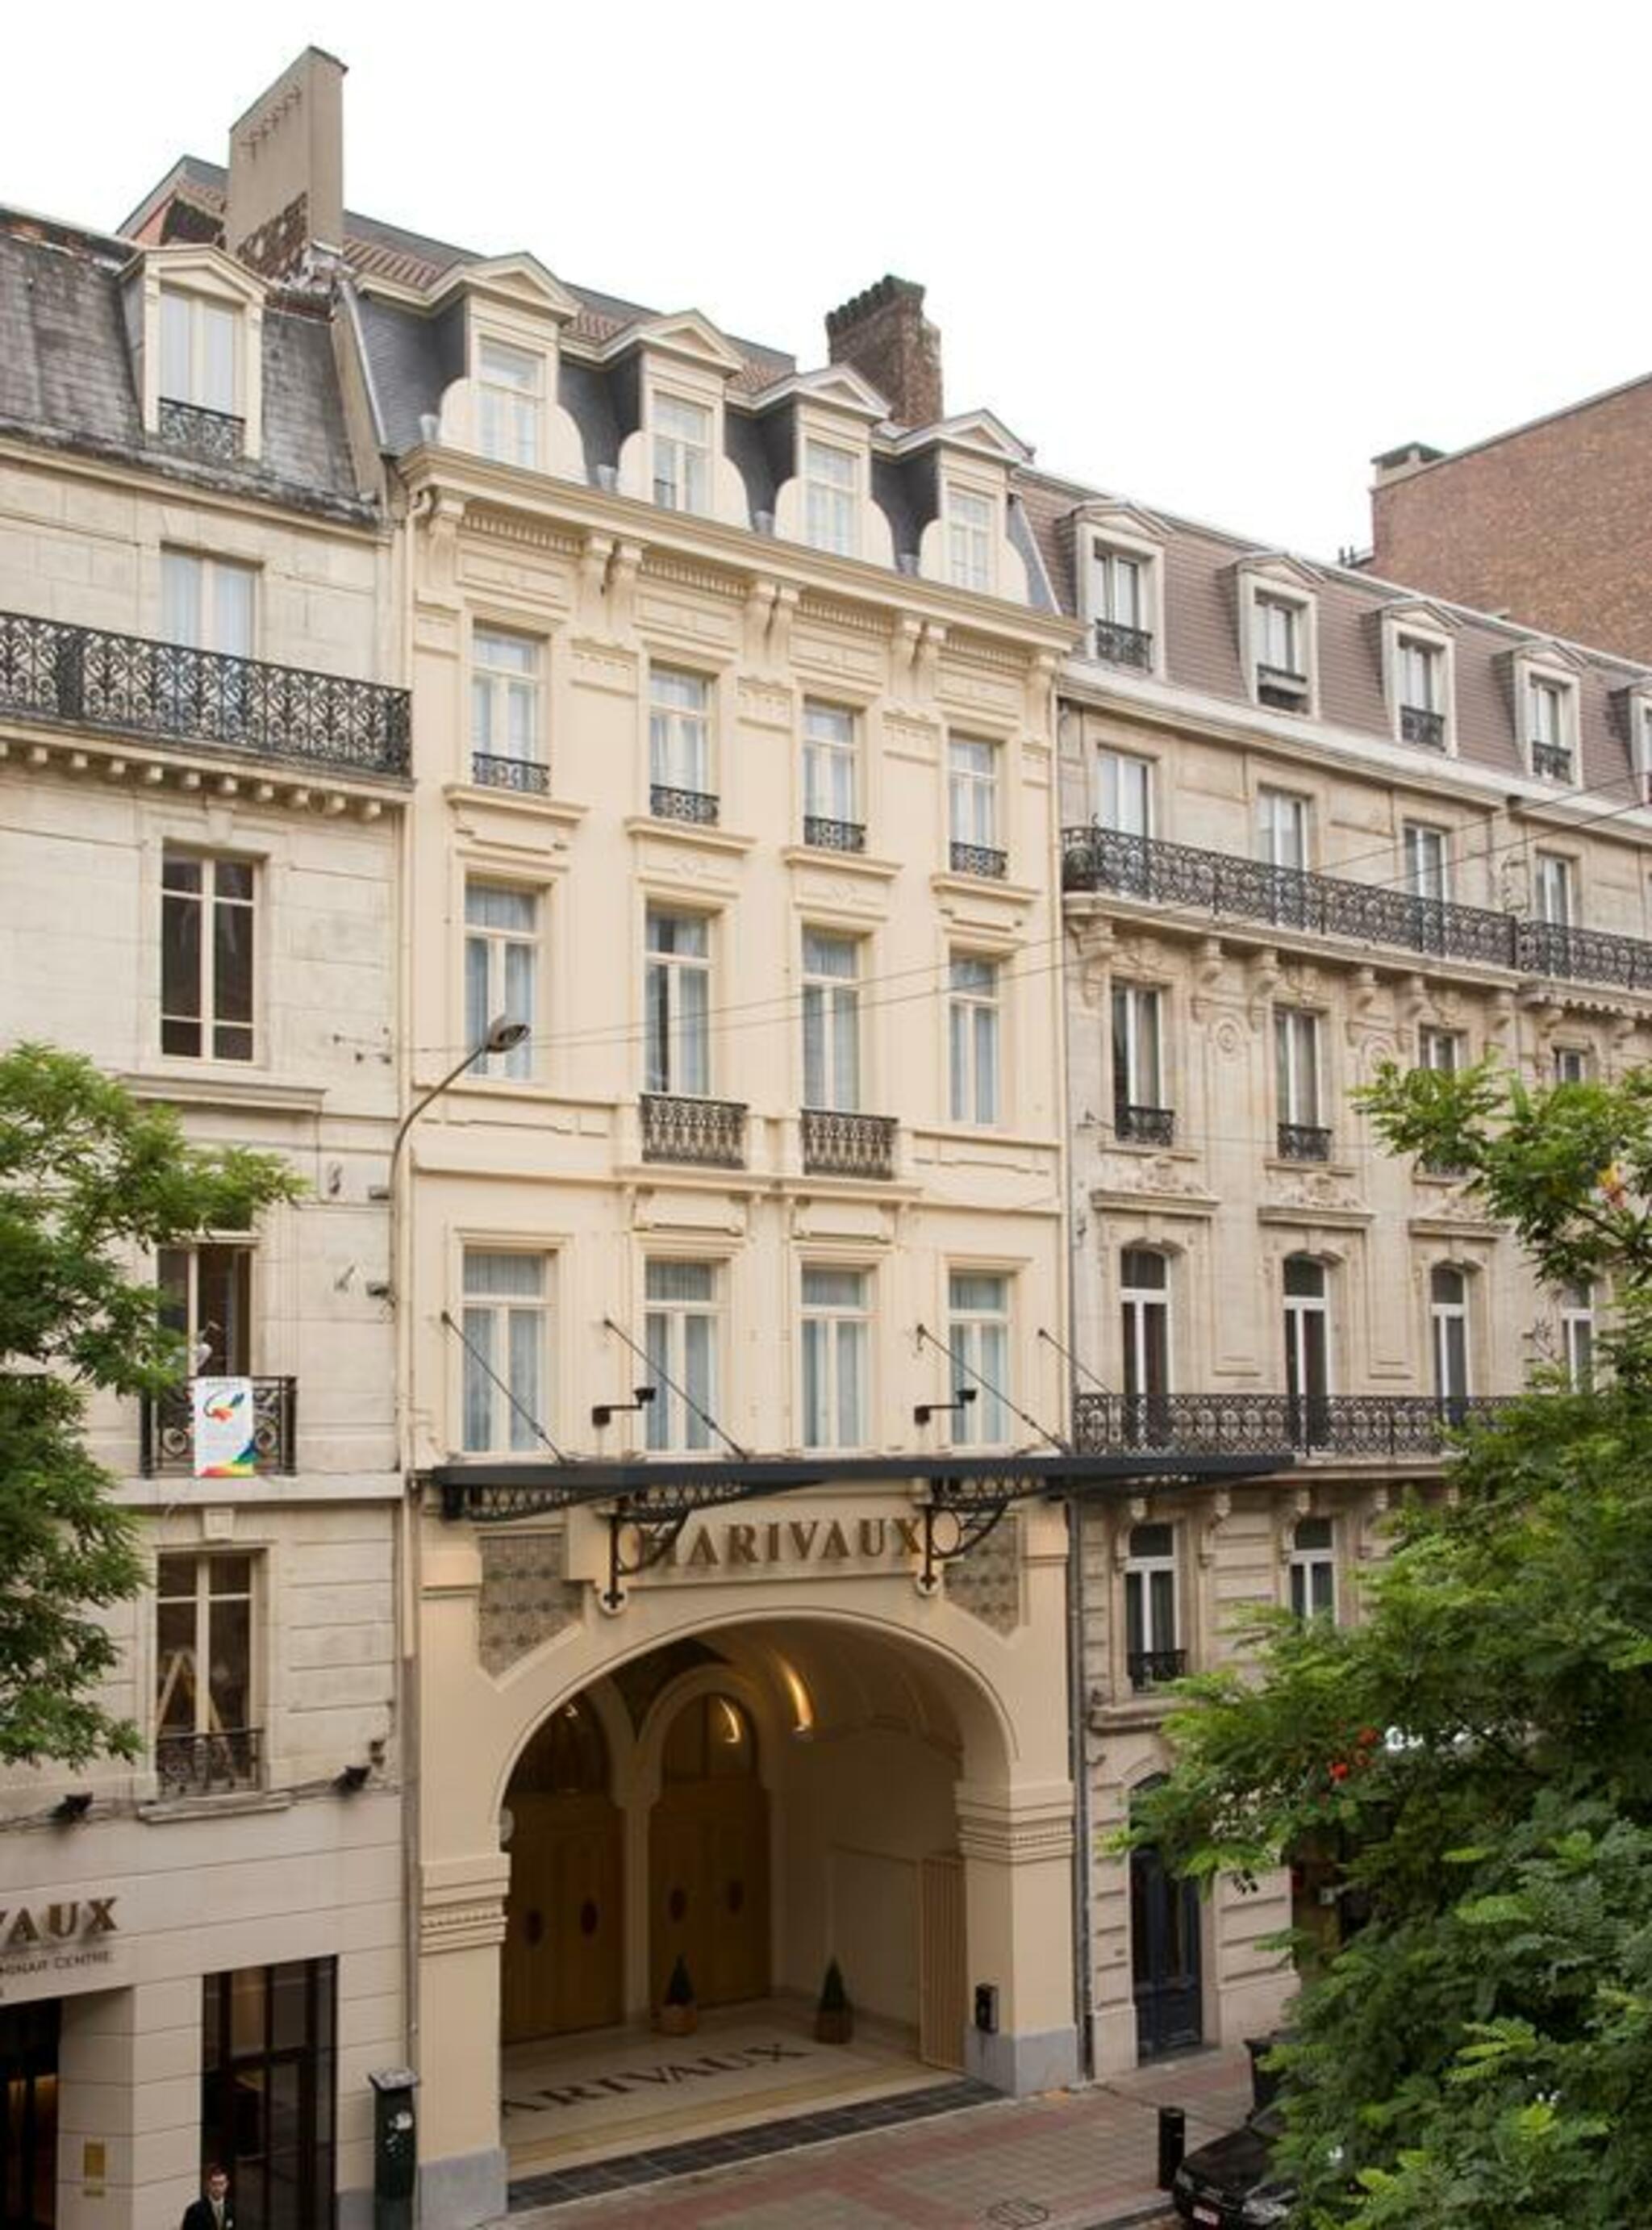 Marivaux Hotel image